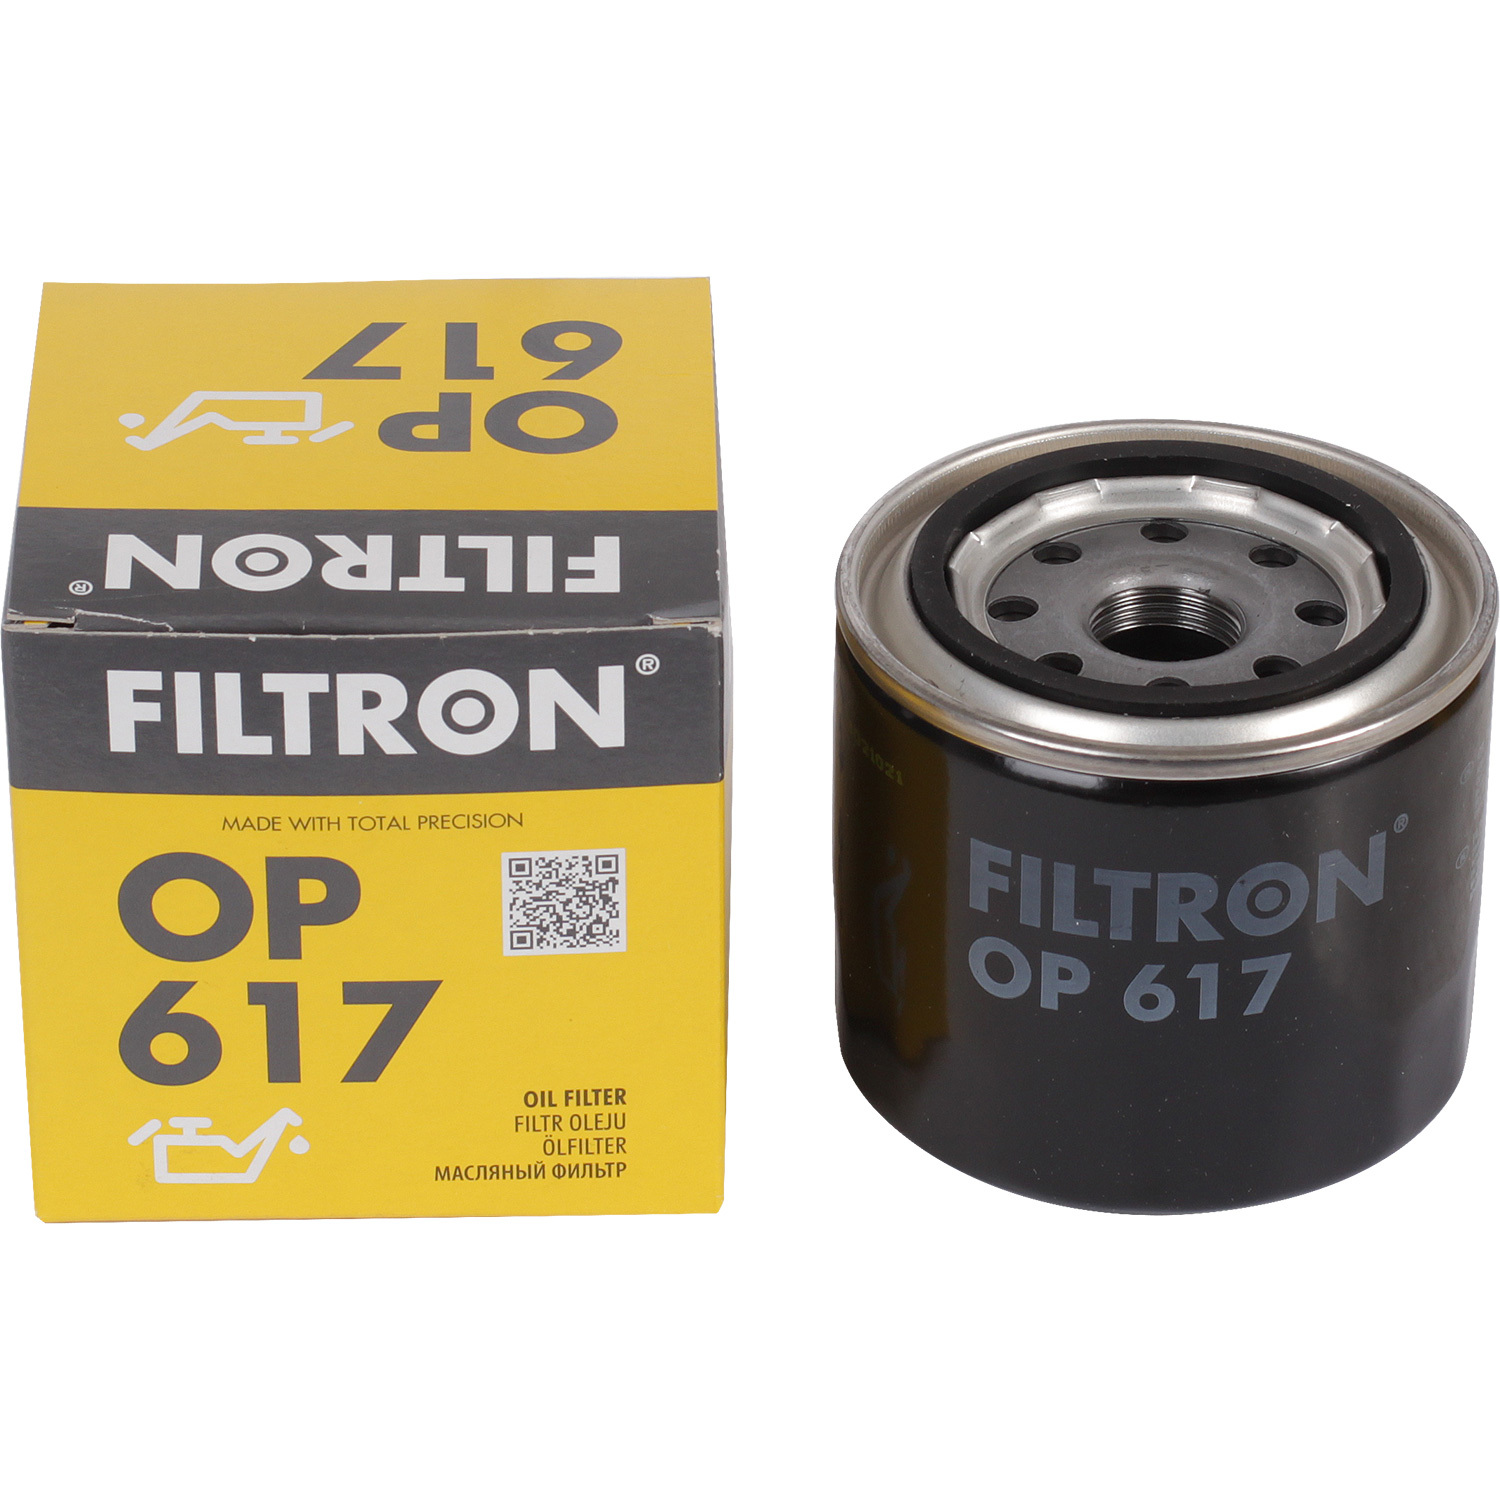 фильтры filtron фильтр масляный filtron oe673 Фильтры Filtron Фильтр масляный Filtron OP617